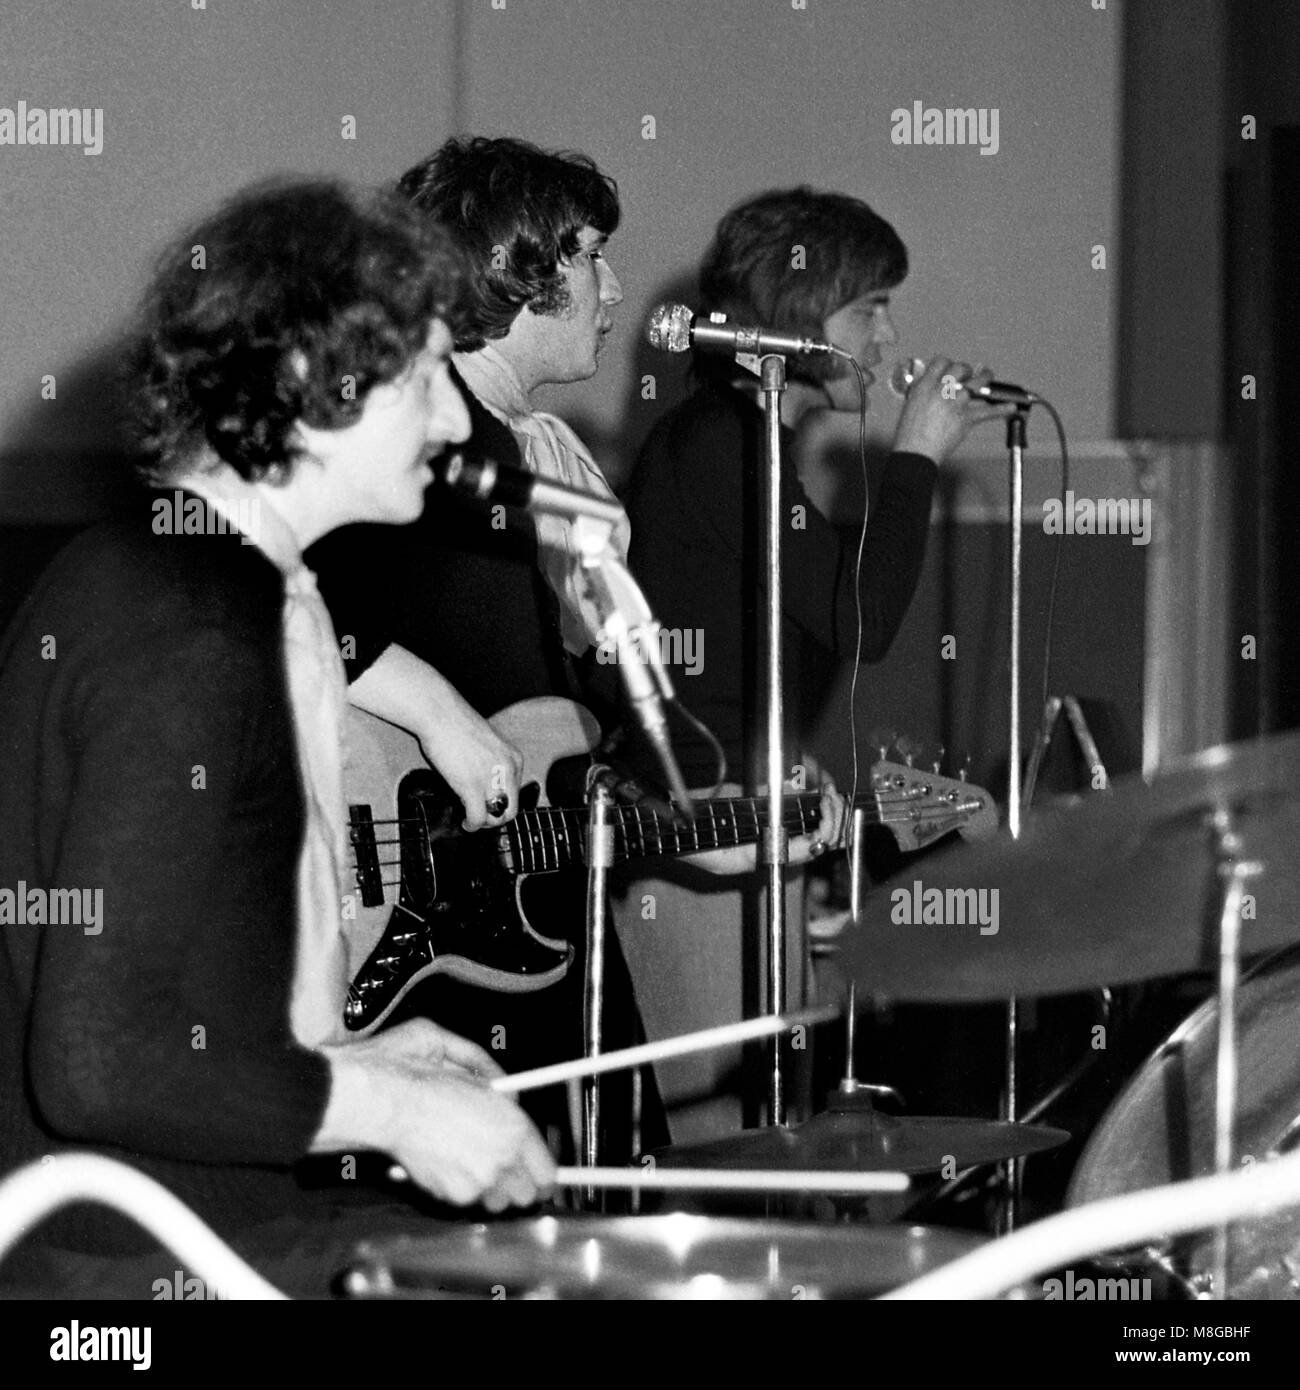 Le Orange Bicycle, un groupe de pop psychédélique britannique, se joue dans les salles Anson du syndicat des étudiants de l'université de Bristol le samedi 1er mars 1969 dans le cadre des événements RAG de cette année-là. De gauche à droite : Wil Malone, John Bachini (également connu sous le nom de John Baccini) et Robb Storme Banque D'Images